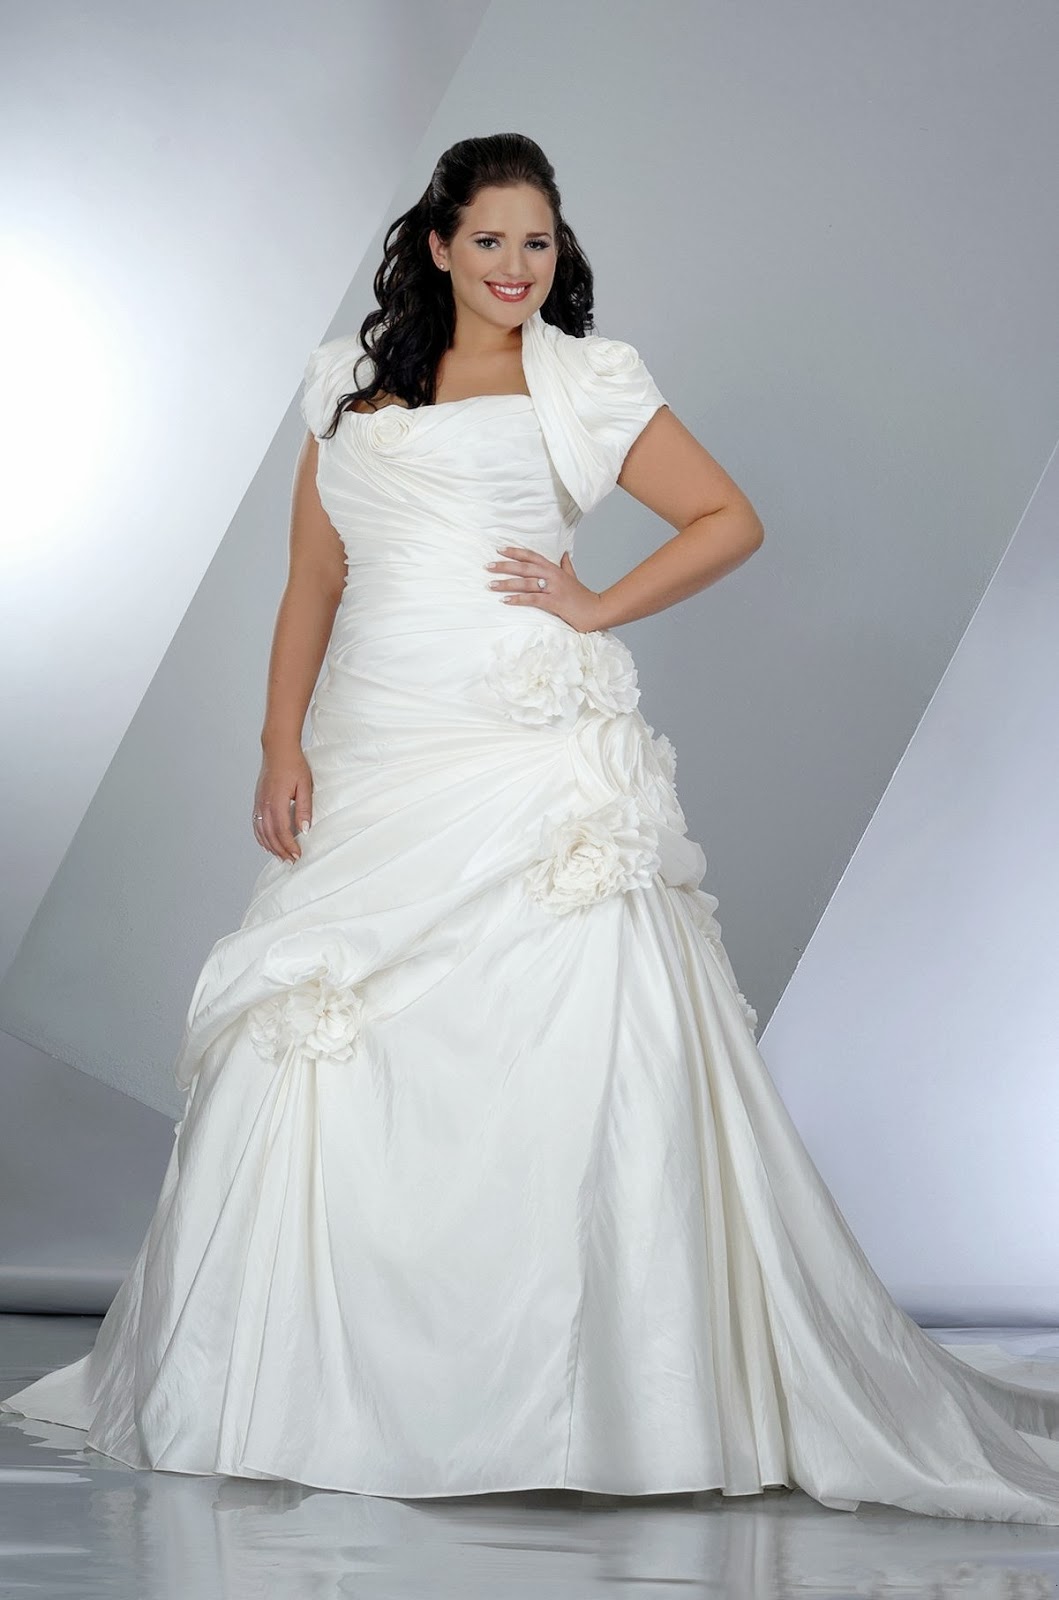 strapless wedding dresses plus size Solicite um orçamento de qualquer modelo AQUI!